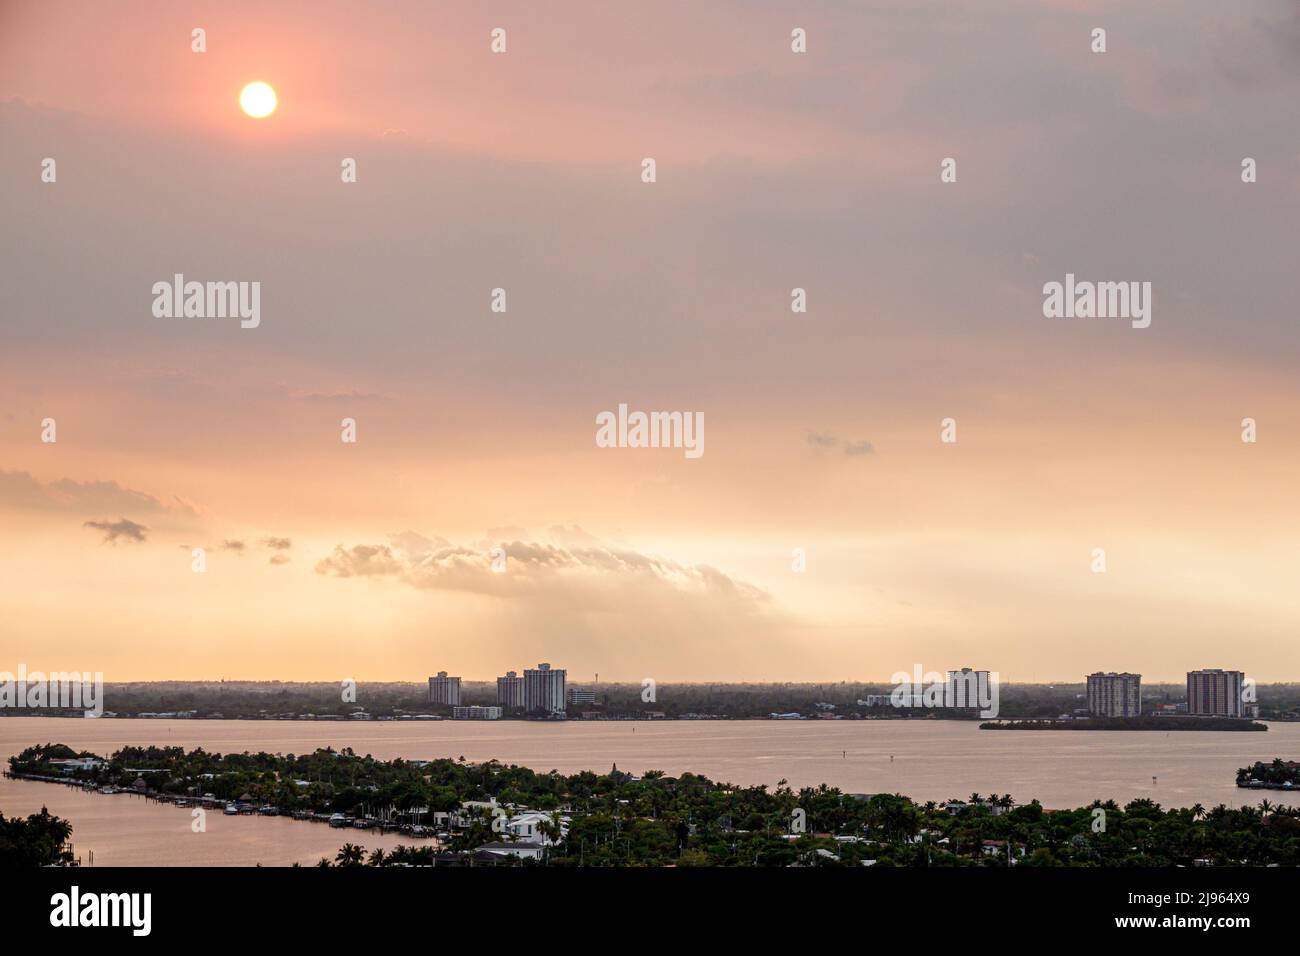 Miami Beach Florida, Biscayne Point Bay humo de agua de Everglades fuego, calentamiento global crisis climática cambiar cielo del sol Foto de stock